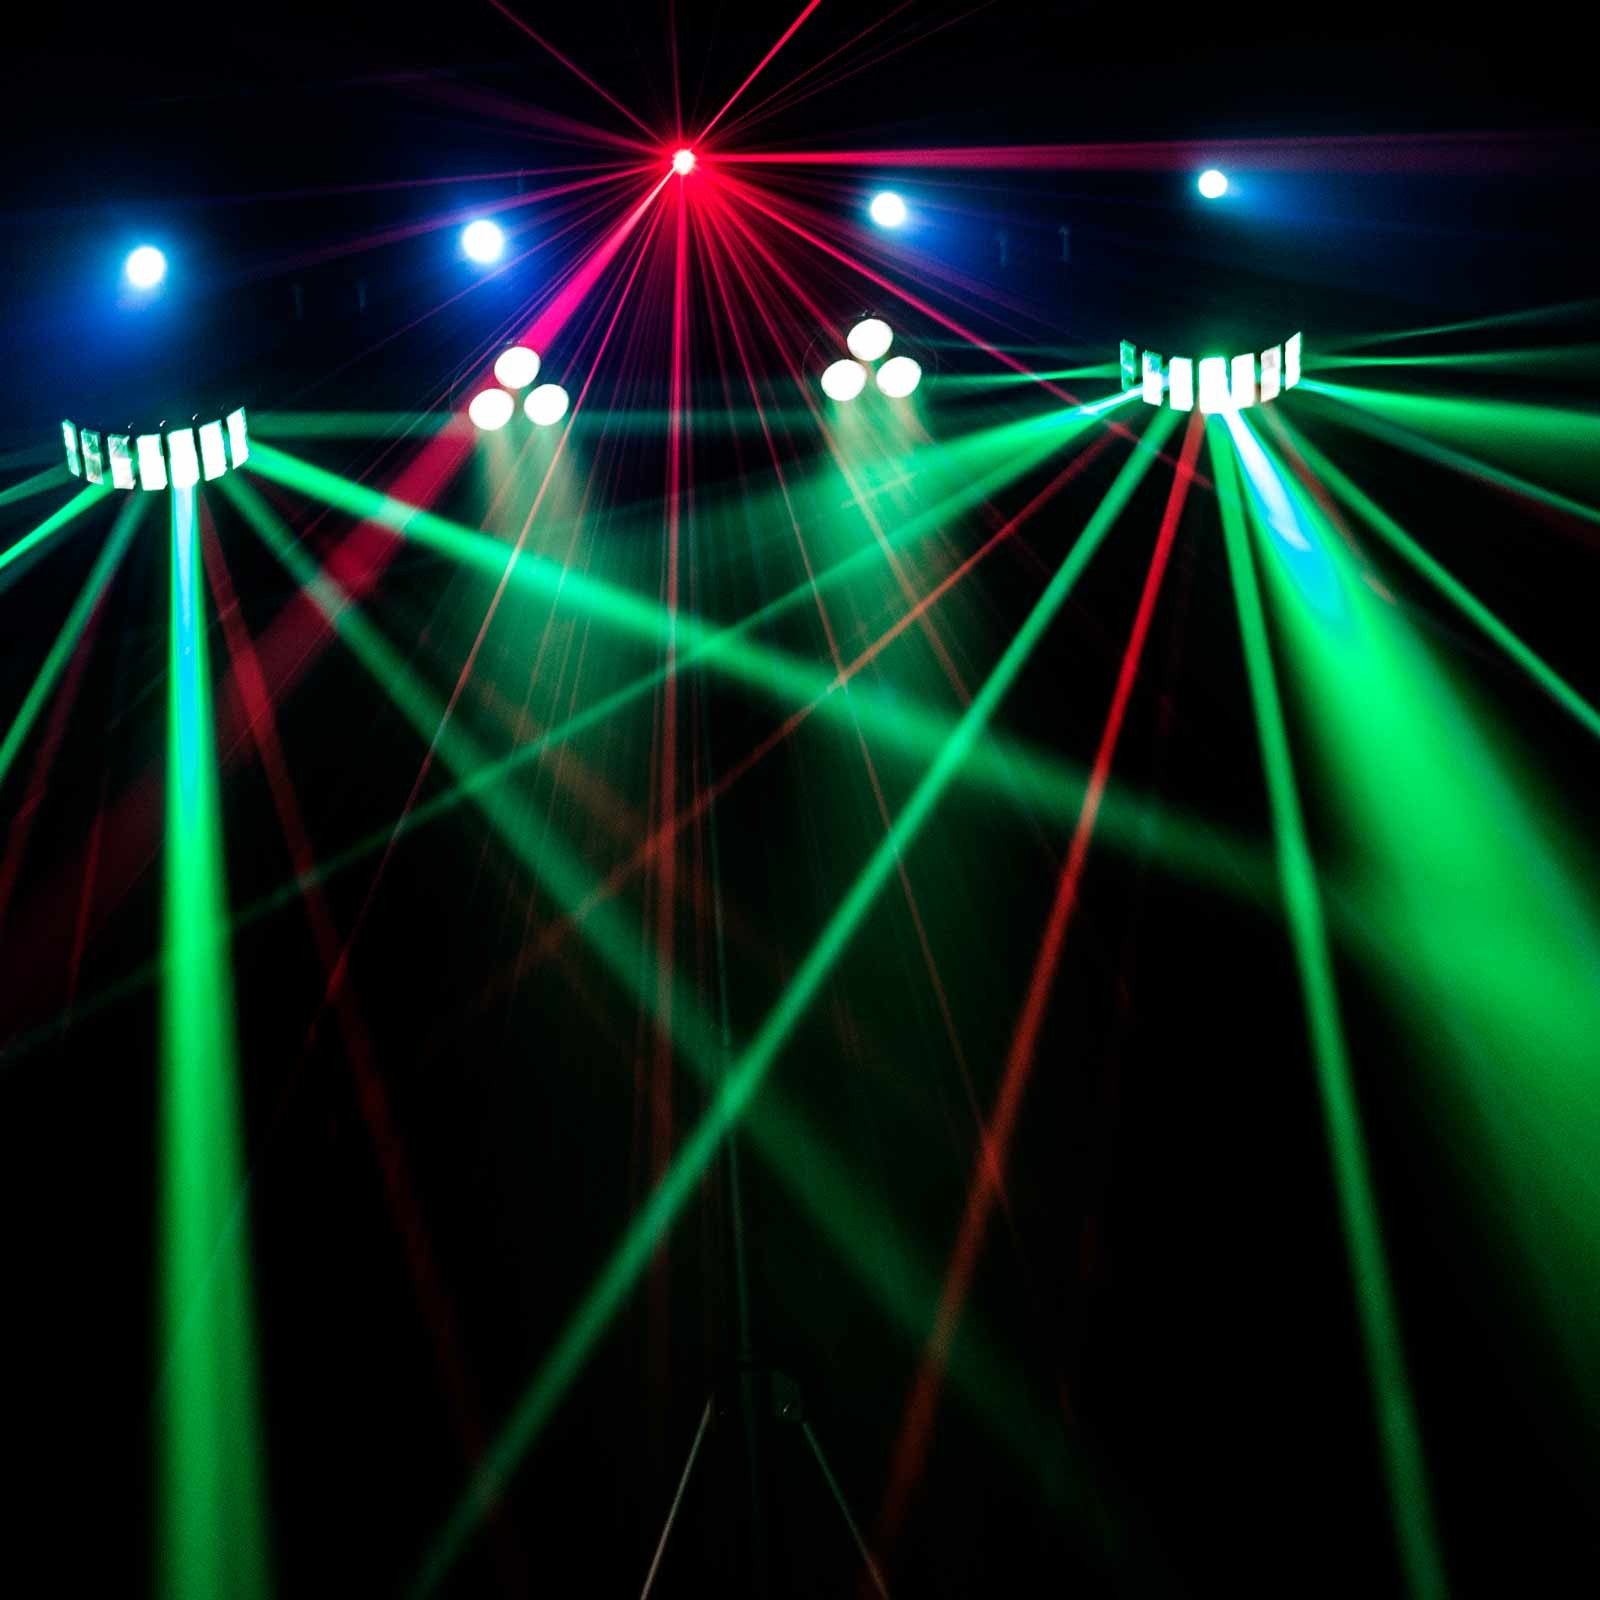 Chauvet Gig Bar Move Moving Head Derby Wash Strobe Laser Lights+